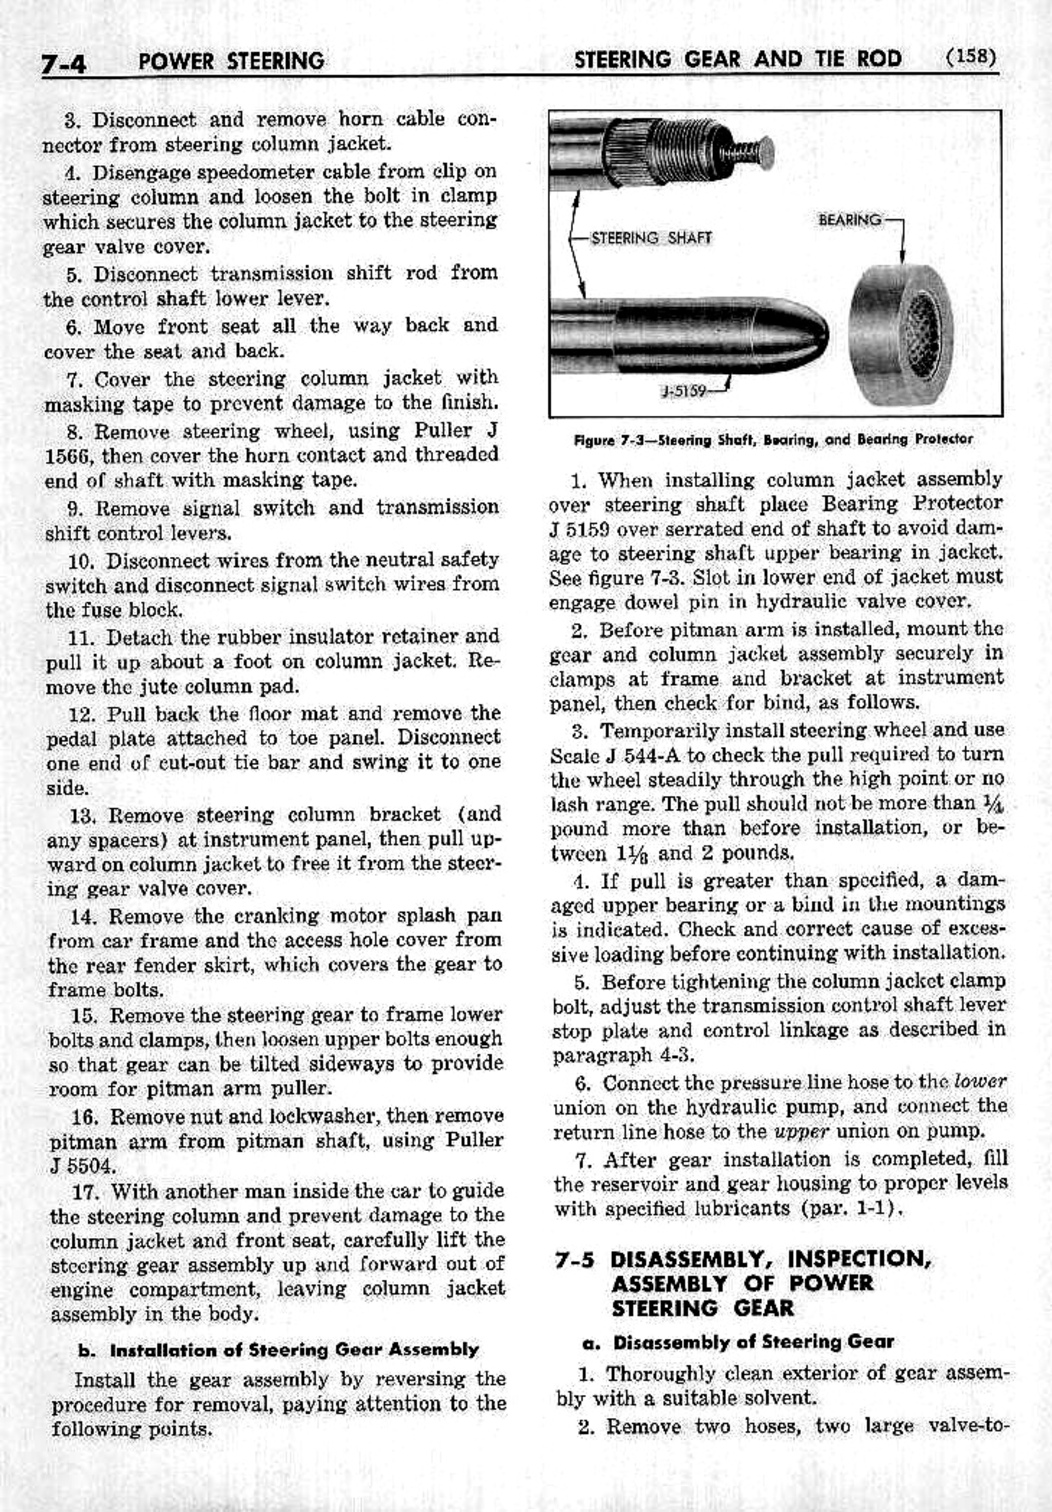 n_08 1953 Buick Shop Manual - Steering-004-004.jpg